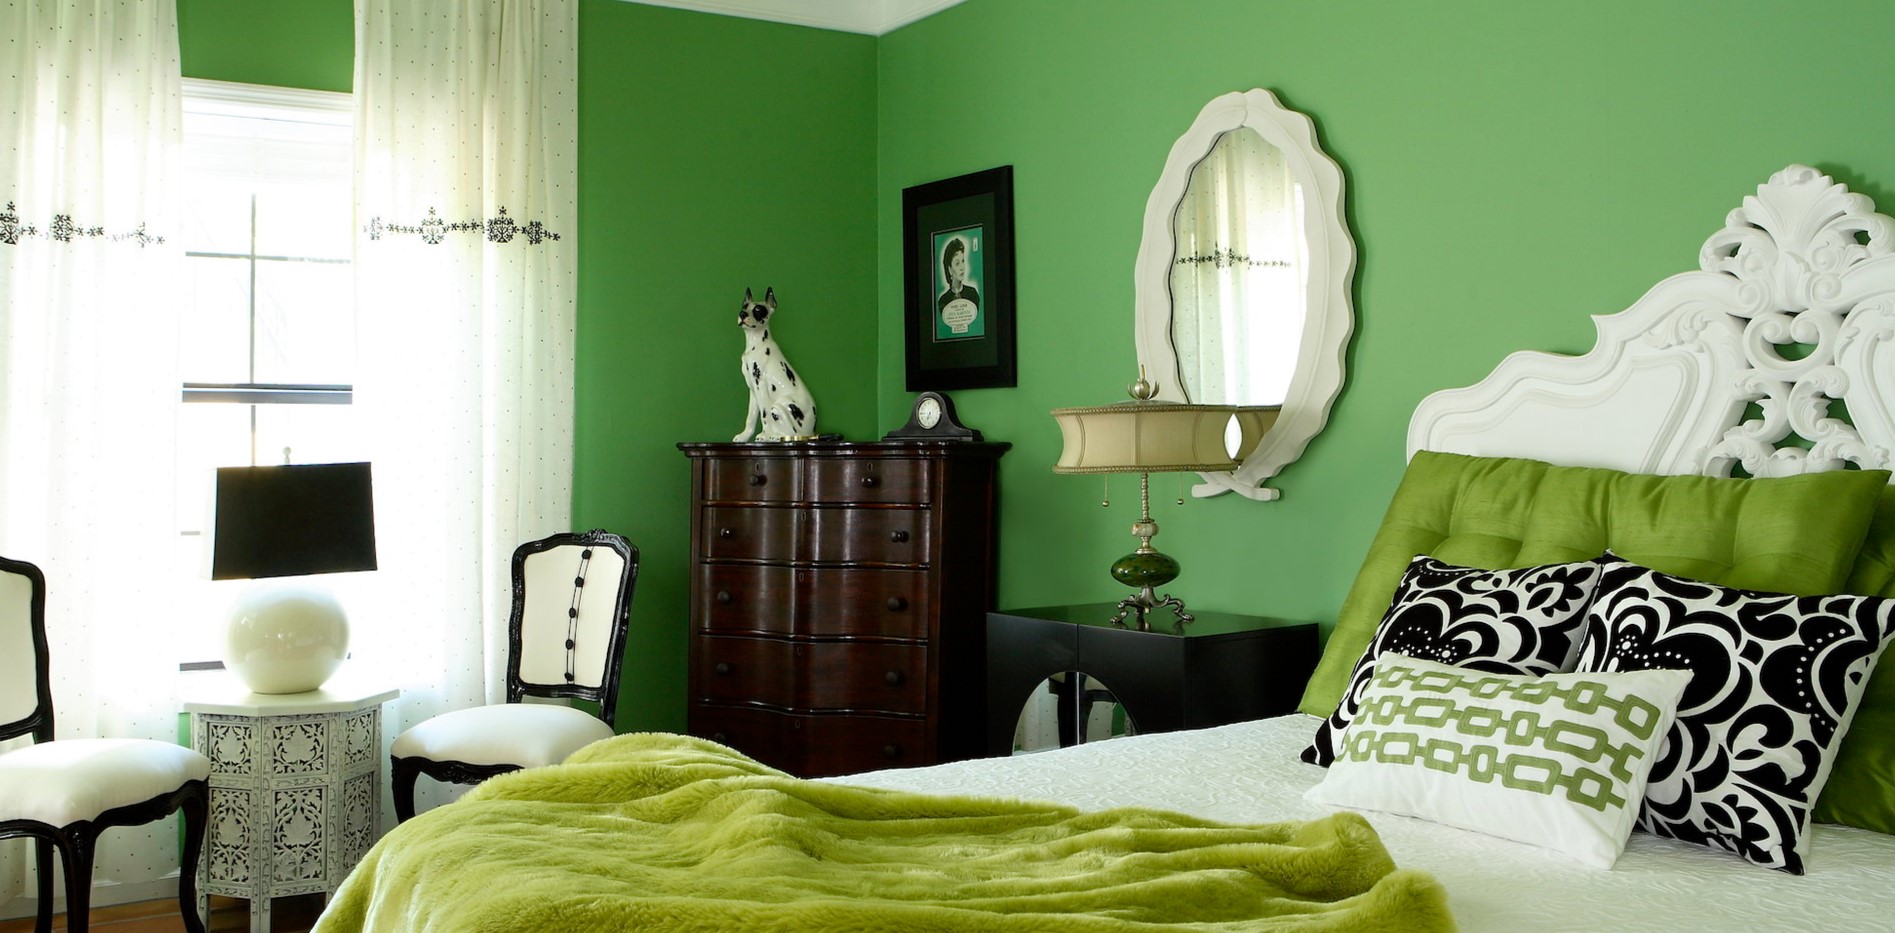 Шалфейные подушки и плед органично дополняют интерьер спальни